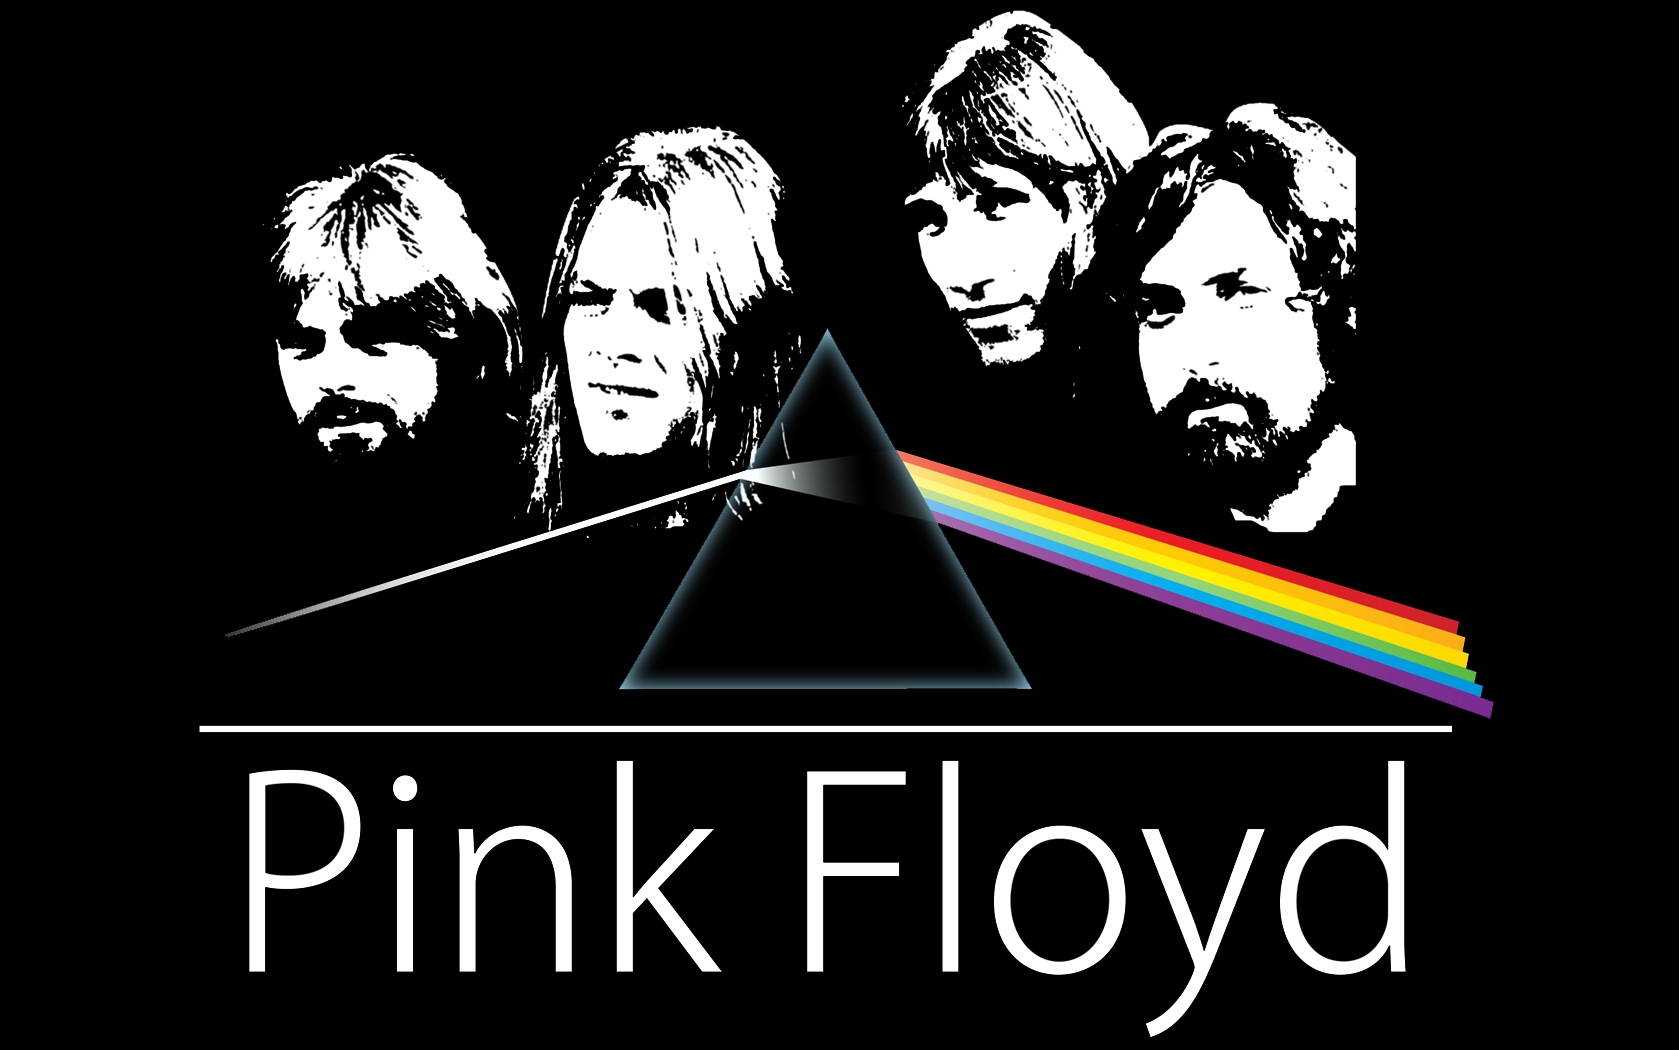 Знаменитая британская группа Pink Floyd выпустит первый за 20 лет альбом